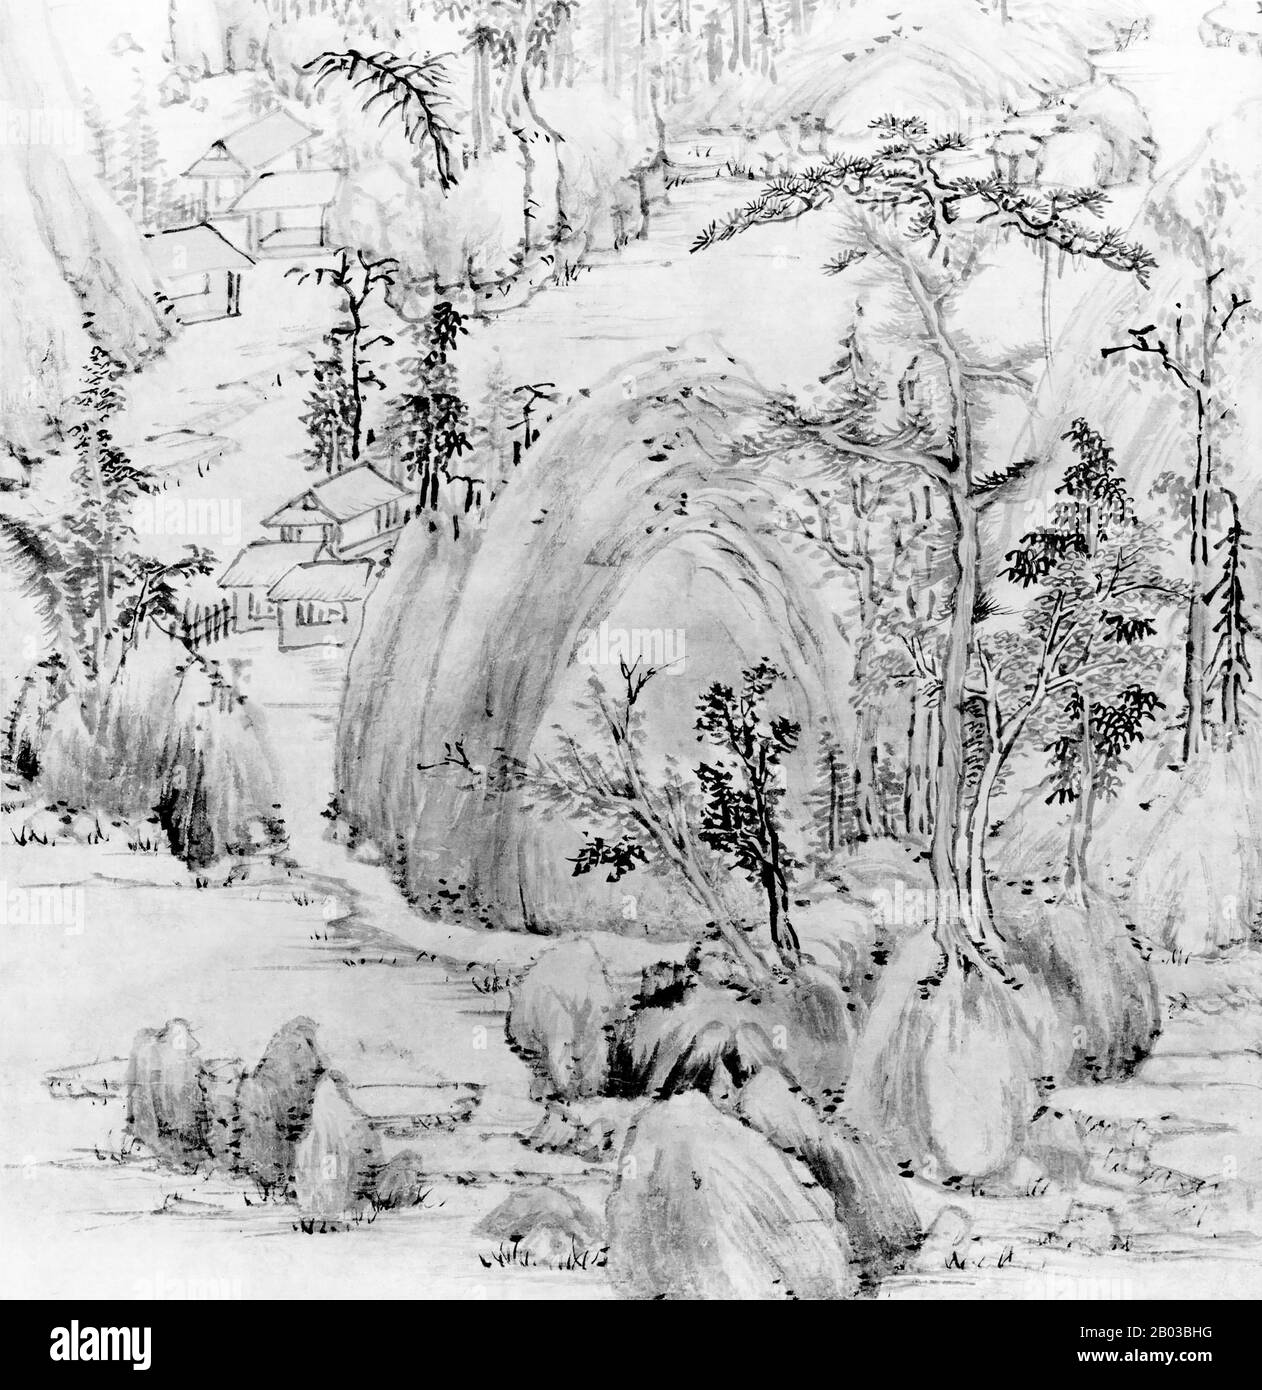 China: 'Landschaft im Stil von Huang Gongwang'. Ausschnitt aus hängendem Schriftbild von Mo Shilong (1537-1587), 1581. Mo Shilong (1537-1587) war ein chinesischer Künstler, der während der Ming-Dynastie lebte. Mo Shilong war in Kalligraphie und Malerei begabt, obwohl seine Karriere durch seinen frühen Tod unterbrochen wurde. Stockfoto